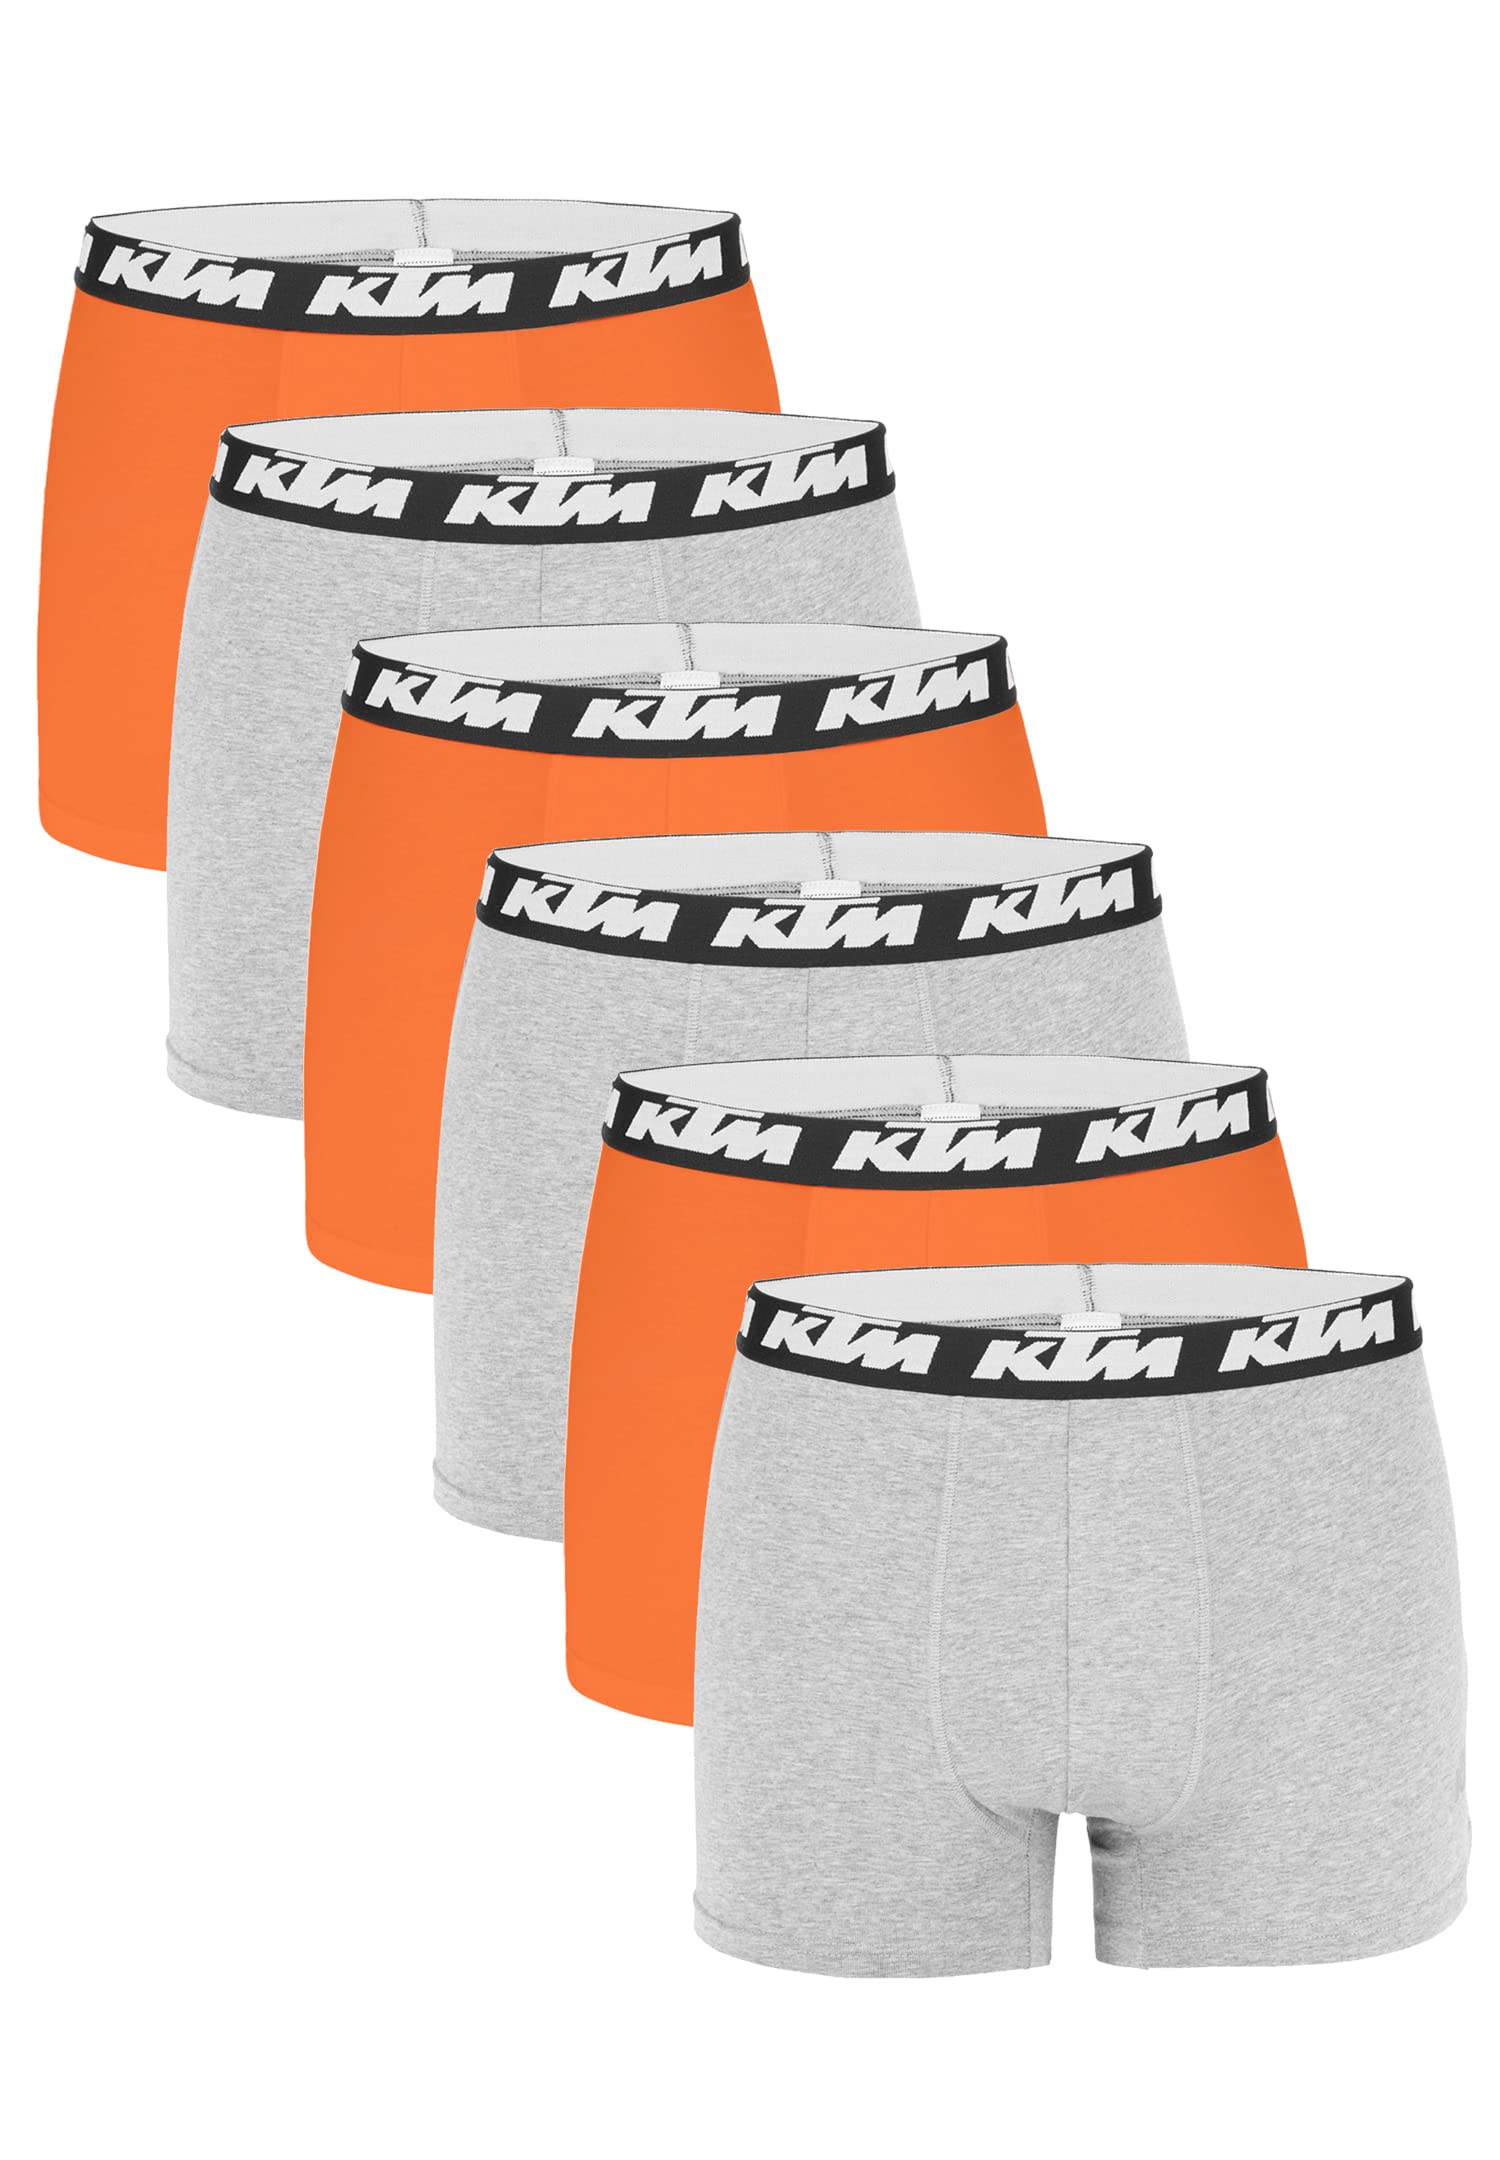 KTM by Freegun Boxershorts für Herren Unterwäsche Pant Men´s Boxer 6 er Pack, Farbe:Light Grey / Orange, Bekleidungsgröße:L